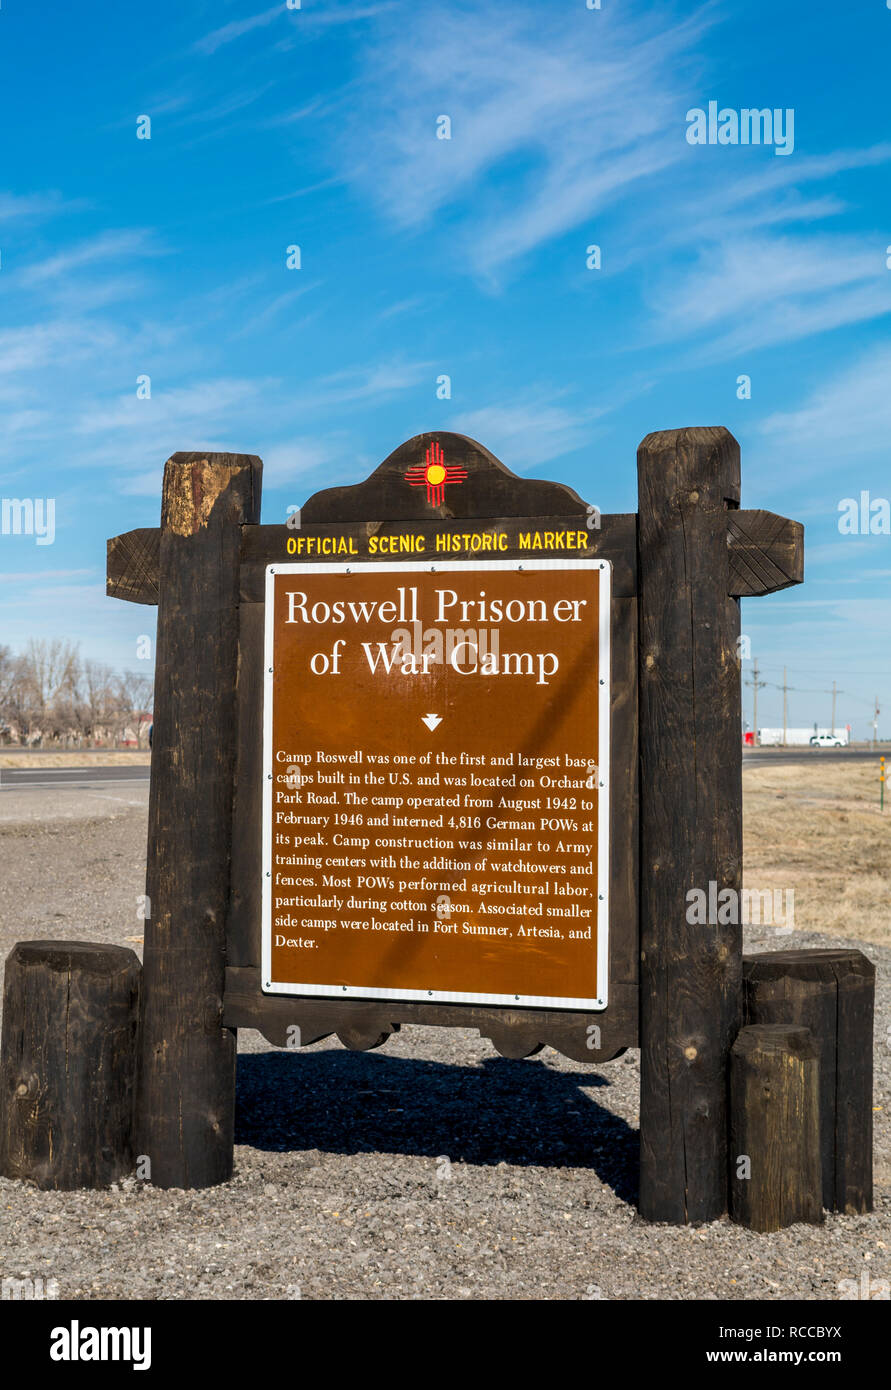 Roswell Camp La Seconde Guerre mondiale, camp de prisonnier de guerre, Roswell, Nouveau Mexique, USA Banque D'Images